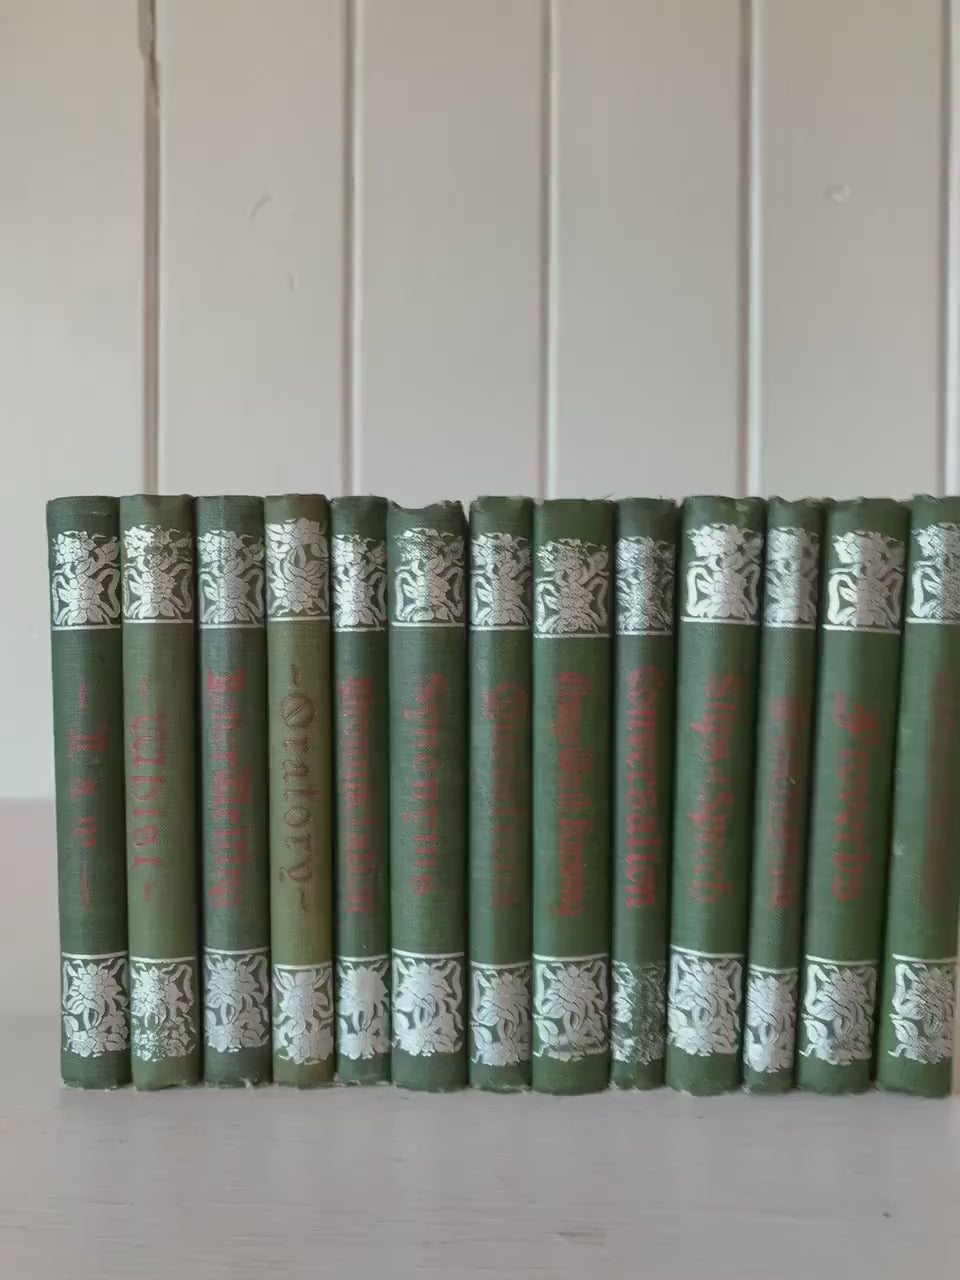 Penn Publishing Handbooks, Antique Green Books for Display, 1900s